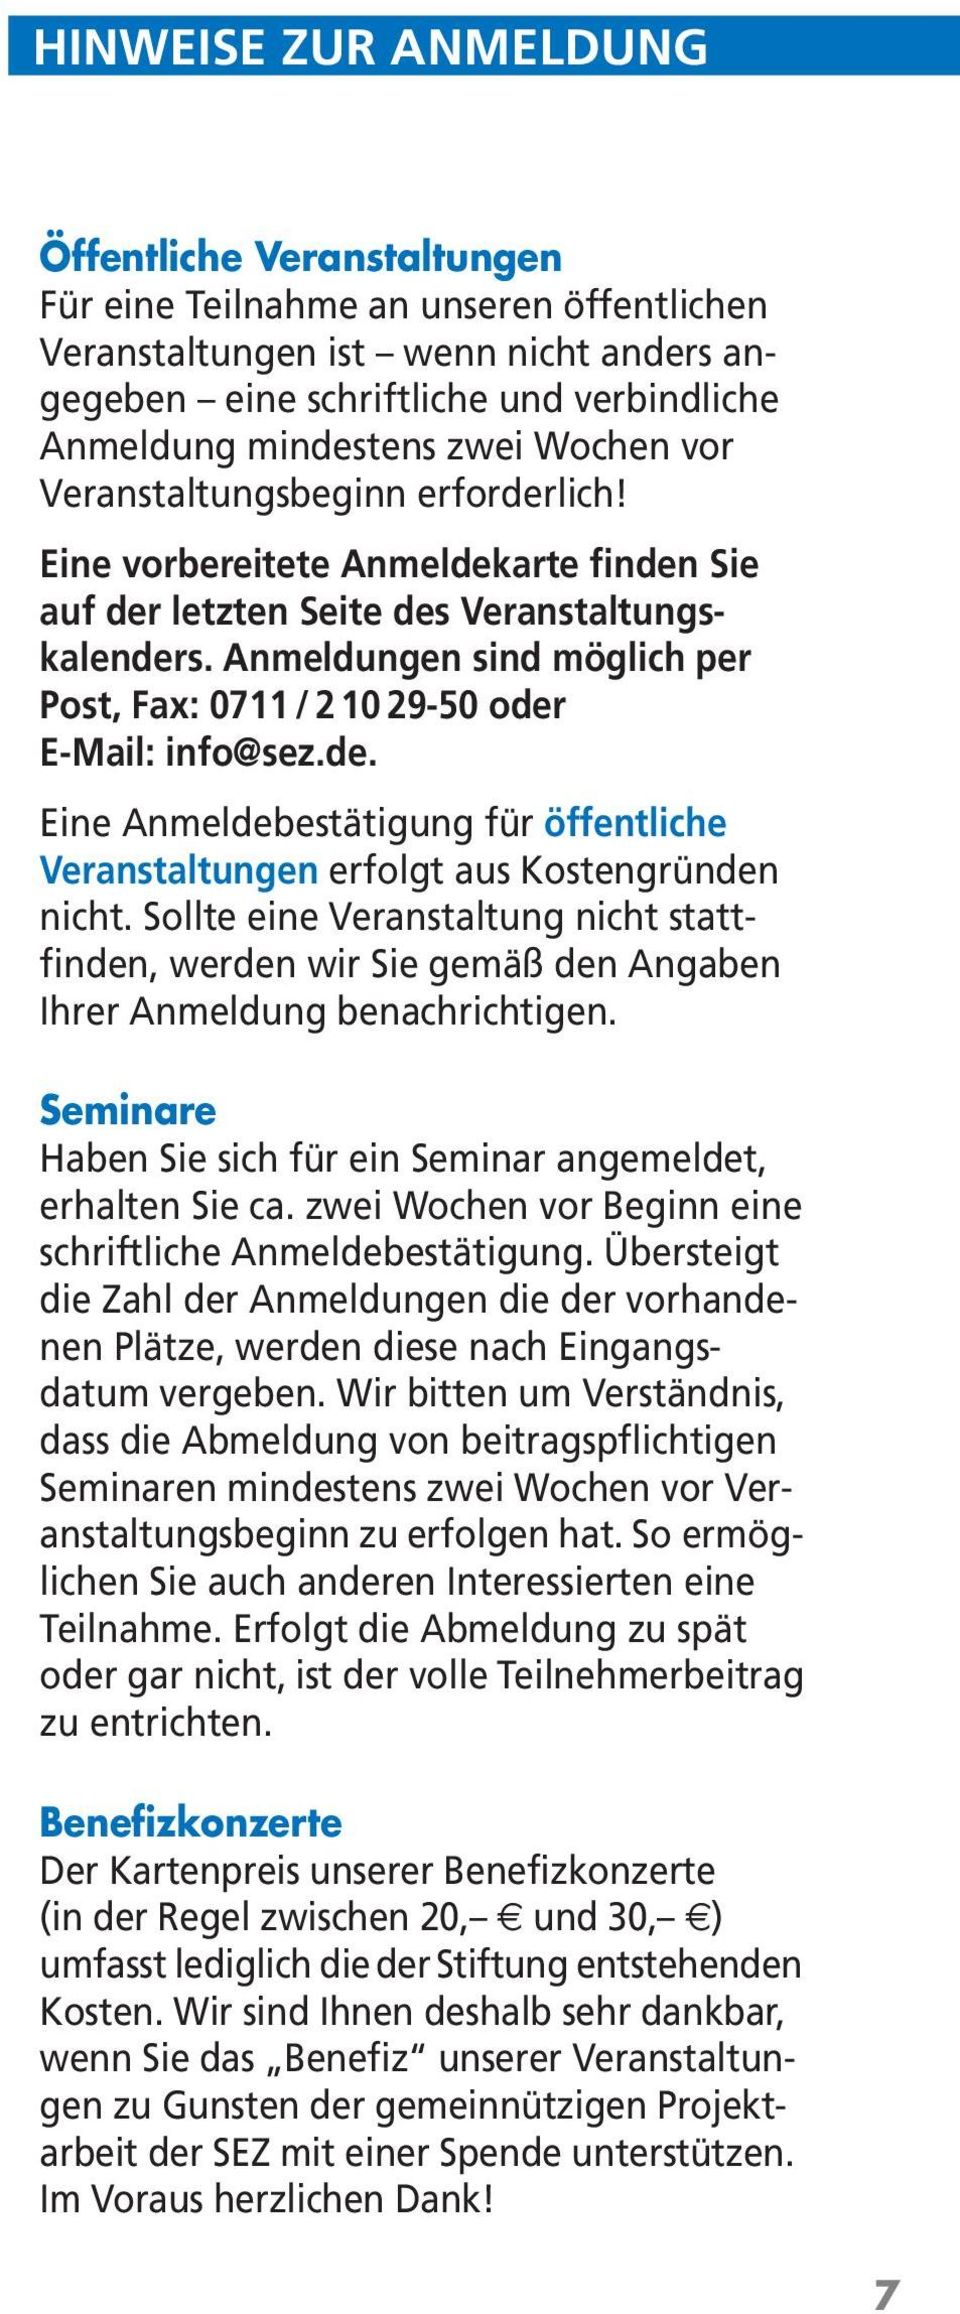 Anmeldungen sind möglich per Post, Fax: 0711/21029-50 oder E-Mail: info@sez.de. Eine Anmeldebestätigung für öffentliche Veranstaltungen erfolgt aus Kostengründen nicht.